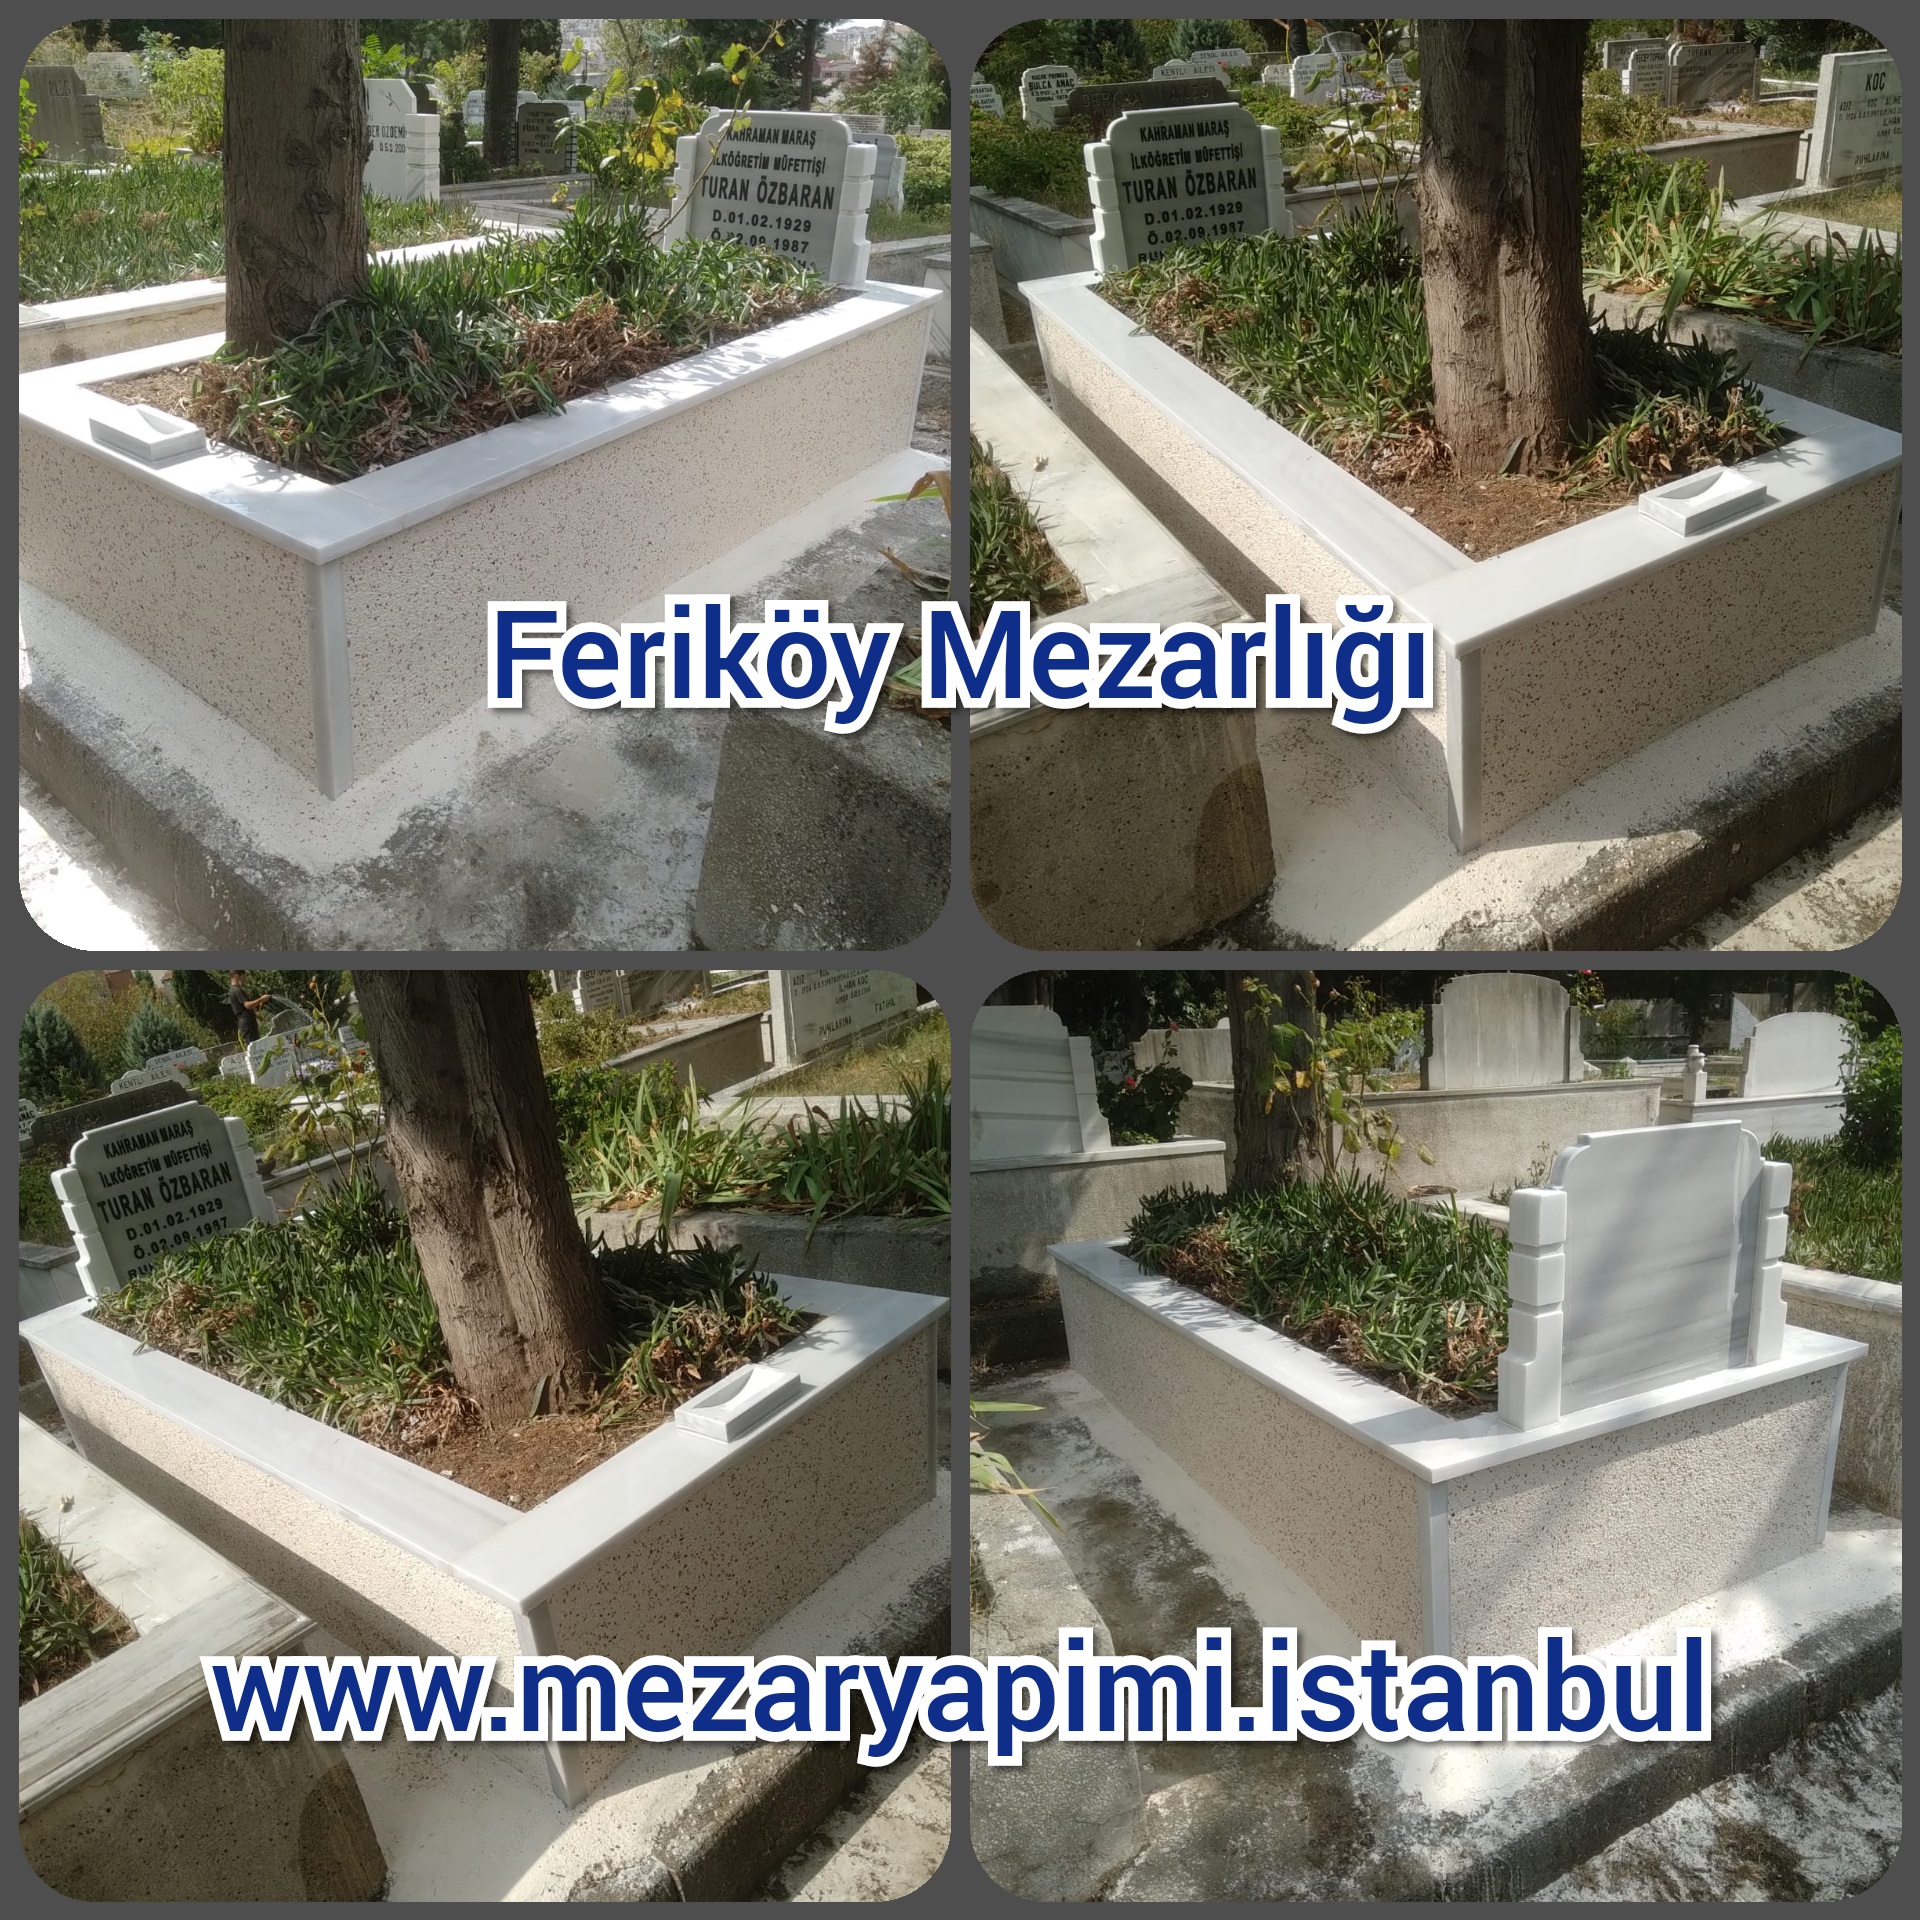 Feriköy Mezarlığı Mezar Yapımı Özbaran Ailesi